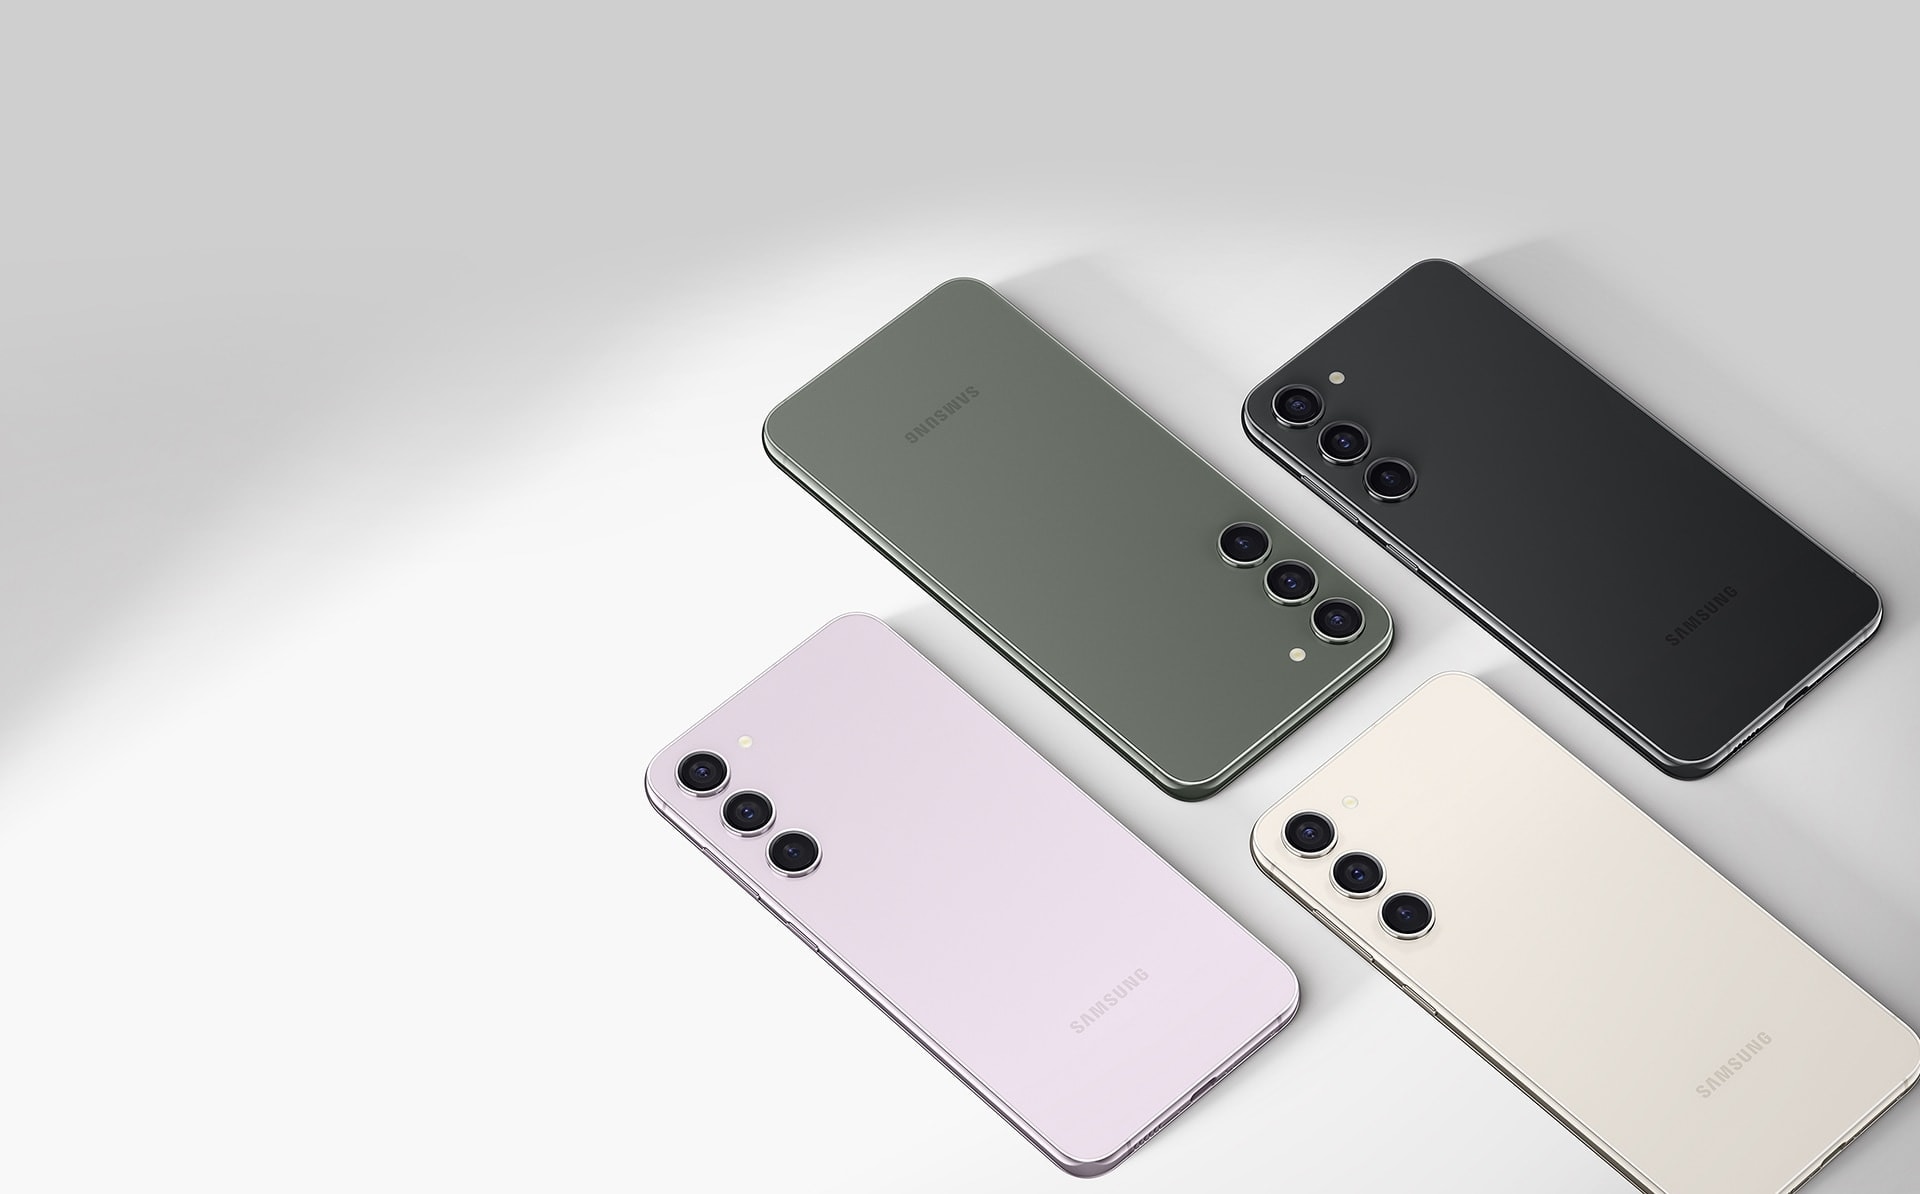 عرض أربعة هواتف Galaxy S23 plus في وضع أفقي. كل منها بلون مختلف: لافندر وأخضر وكريمي وأسود فانتوم.